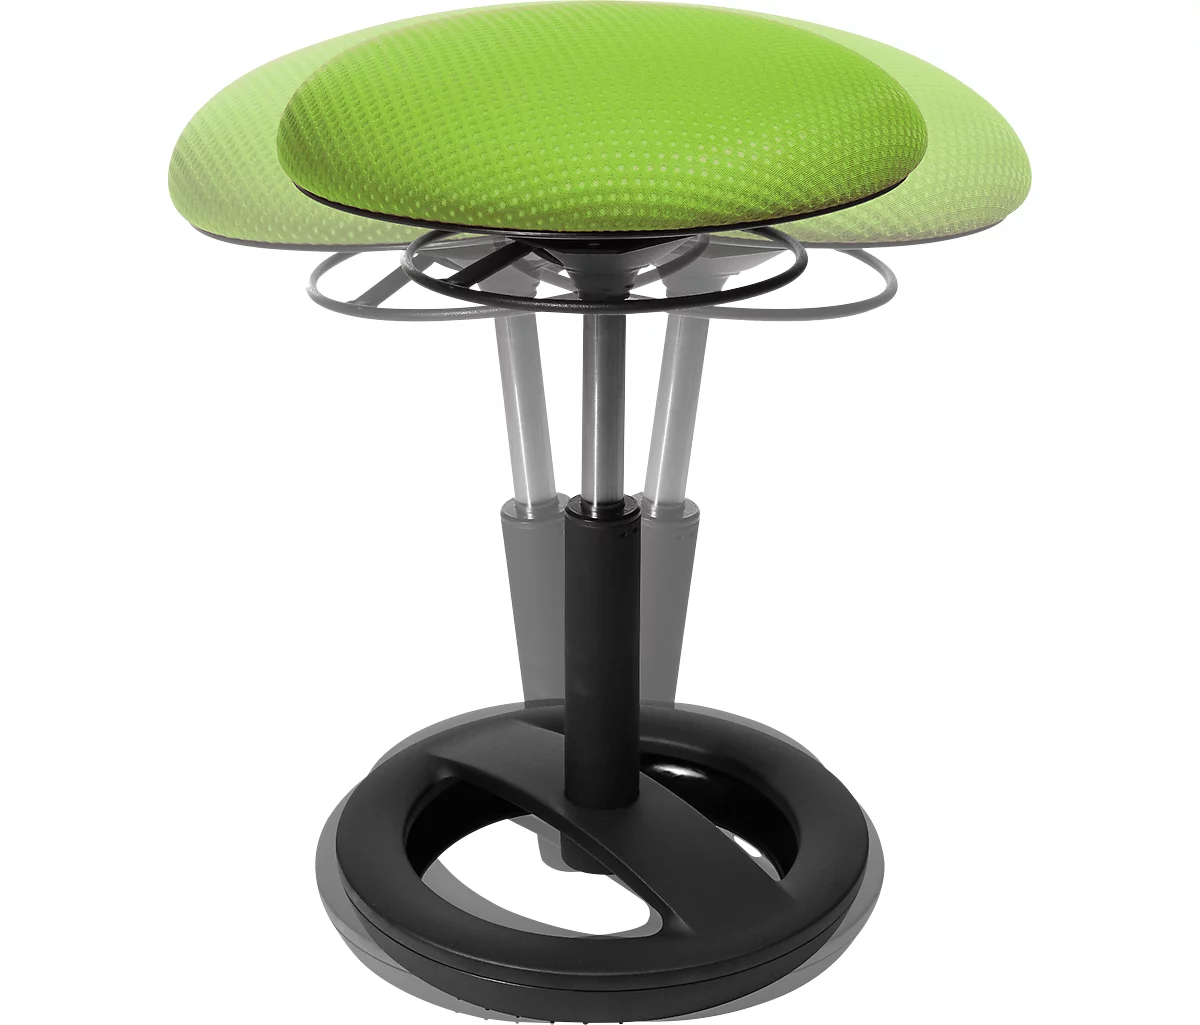 Fitness-Hocker SITNESS BOB, ergonomisches Sitzen, Sitzhöhe 440 bis 570 mm, apfelgrün, Gestell schwarz pulverbeschichtet